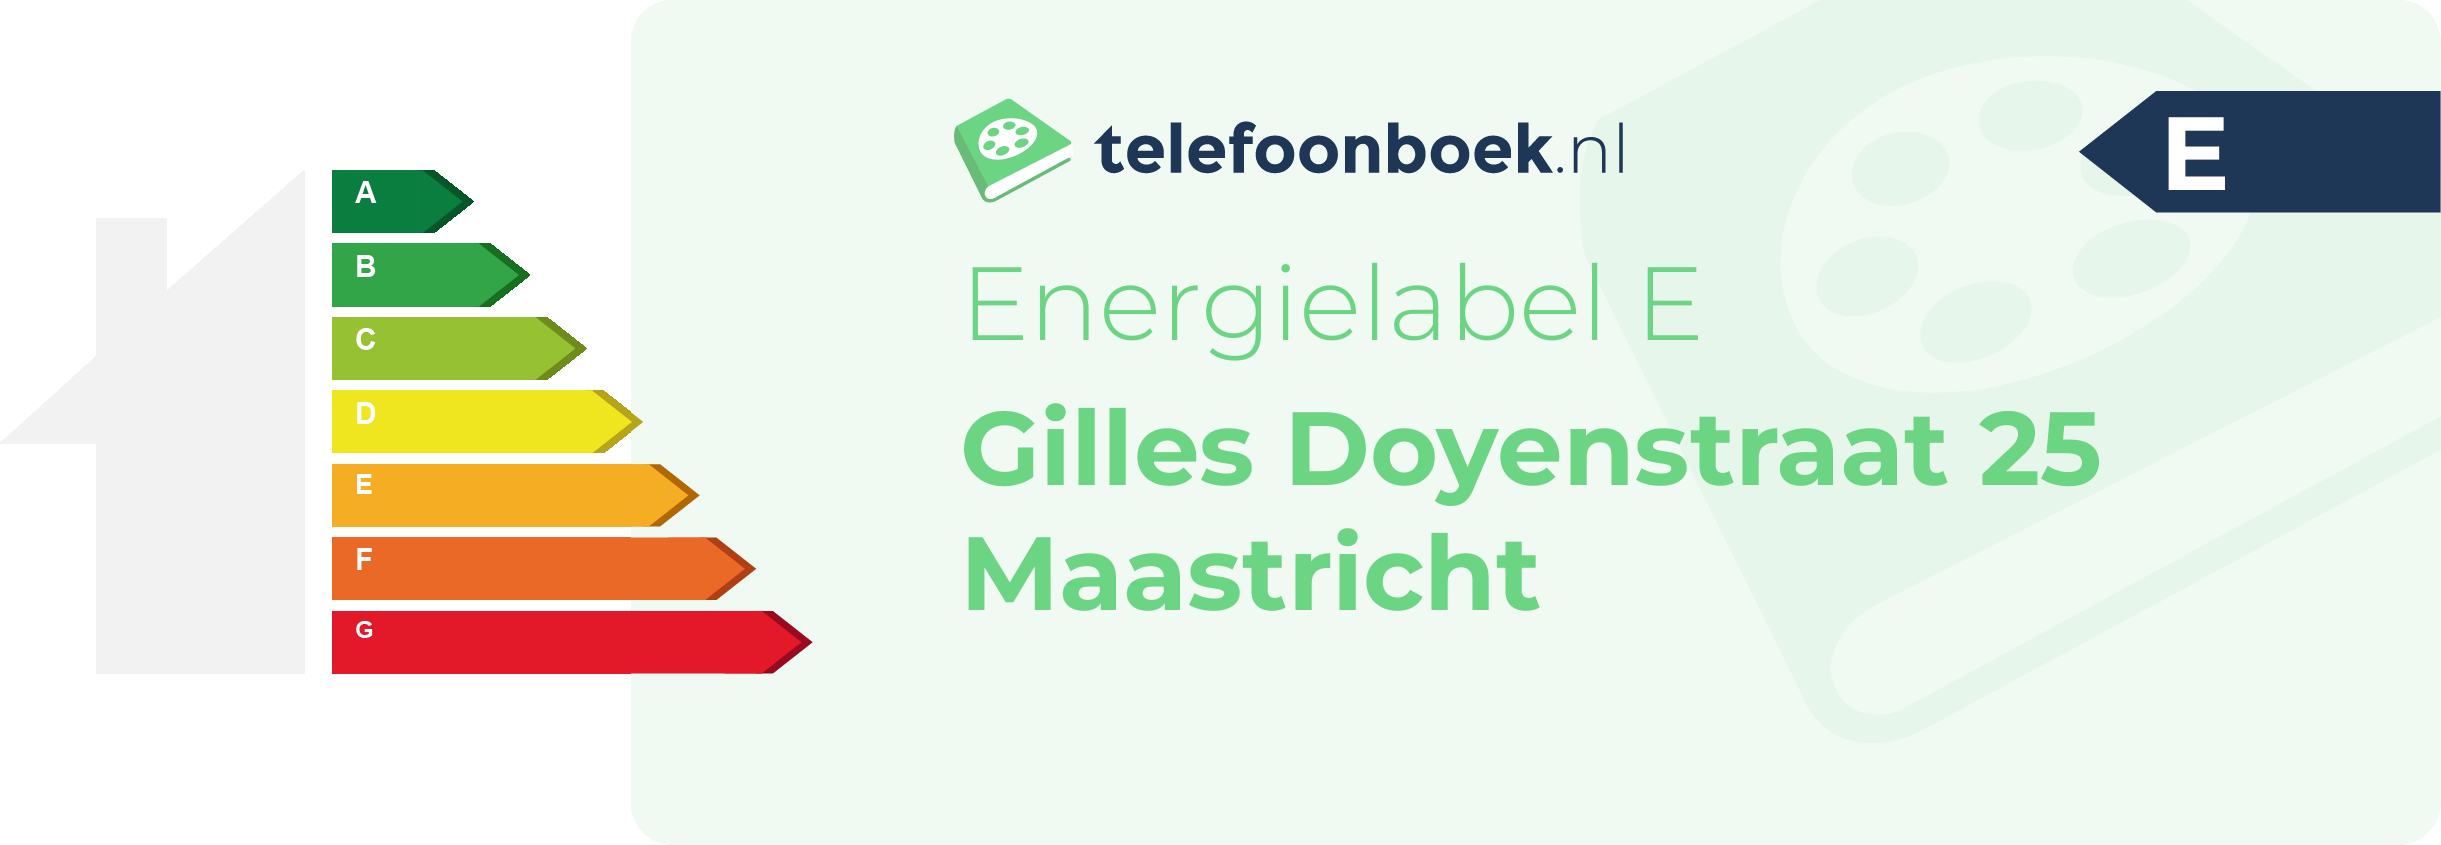 Energielabel Gilles Doyenstraat 25 Maastricht